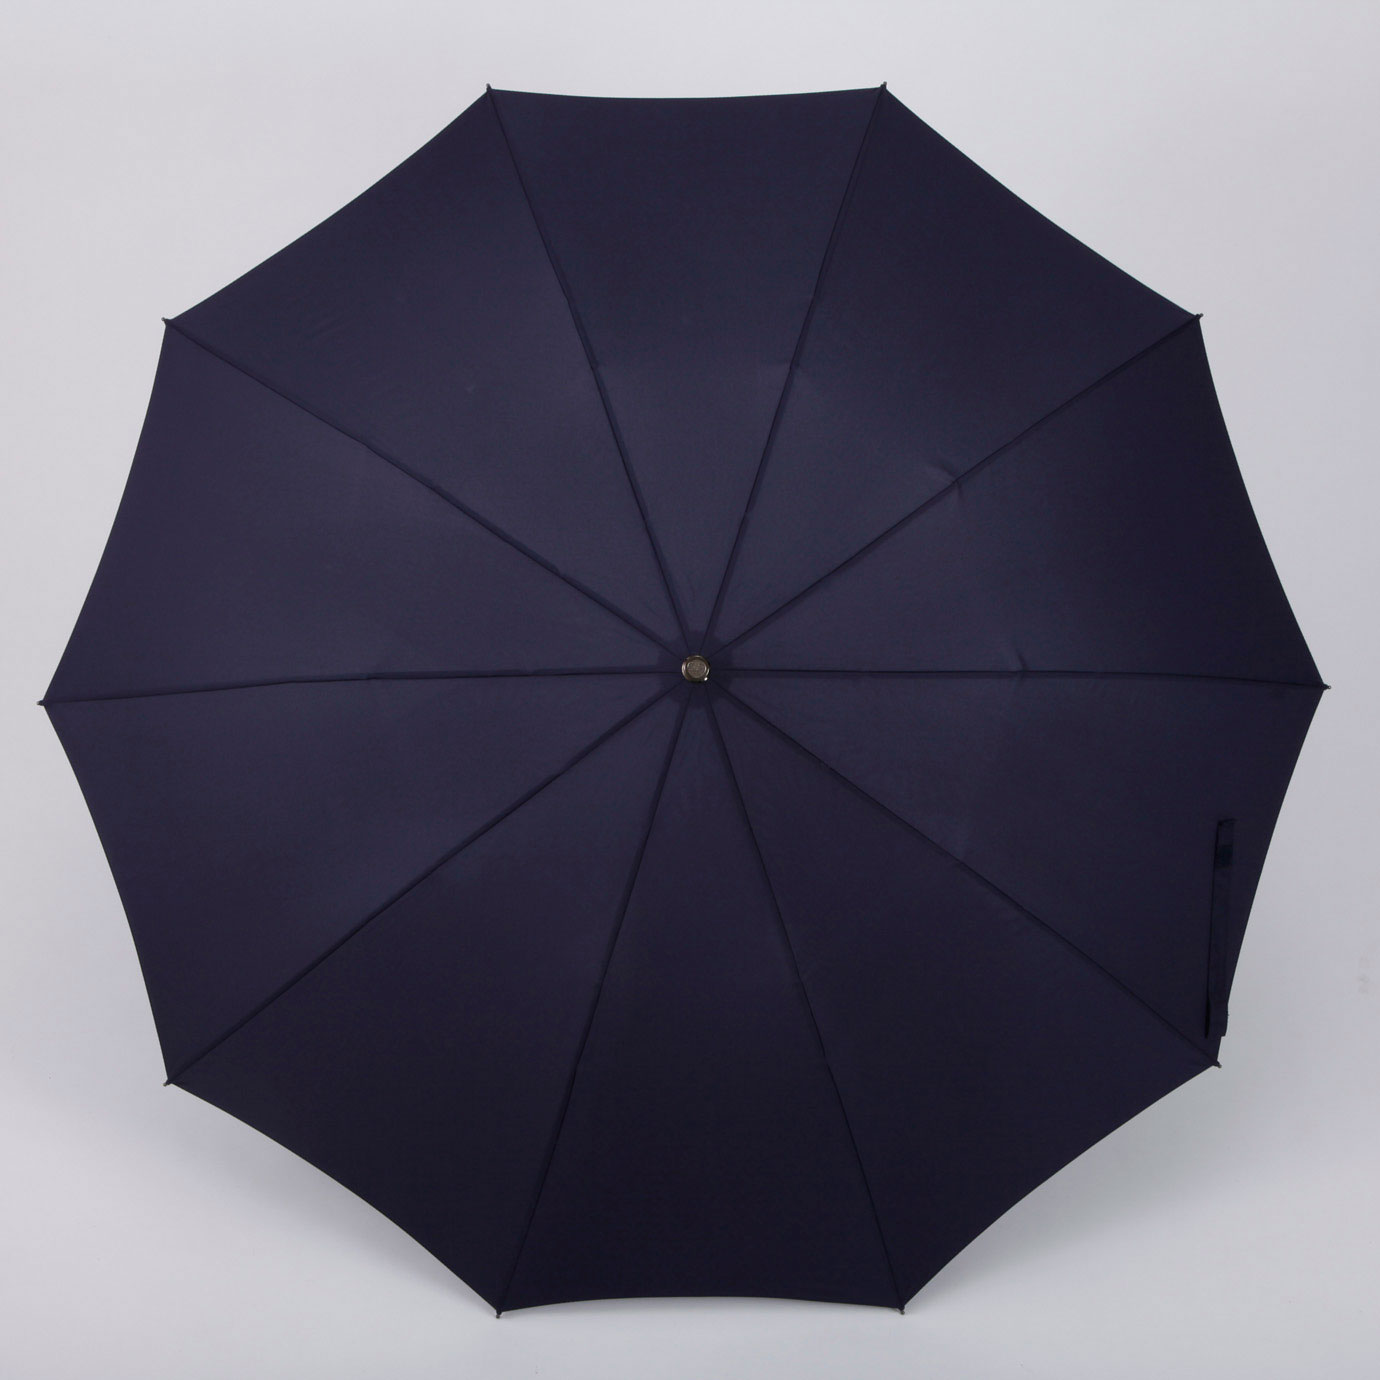 美品 フォックスアンブレラズ メイプル テレスコピック 折りたたみ傘 ネイビー